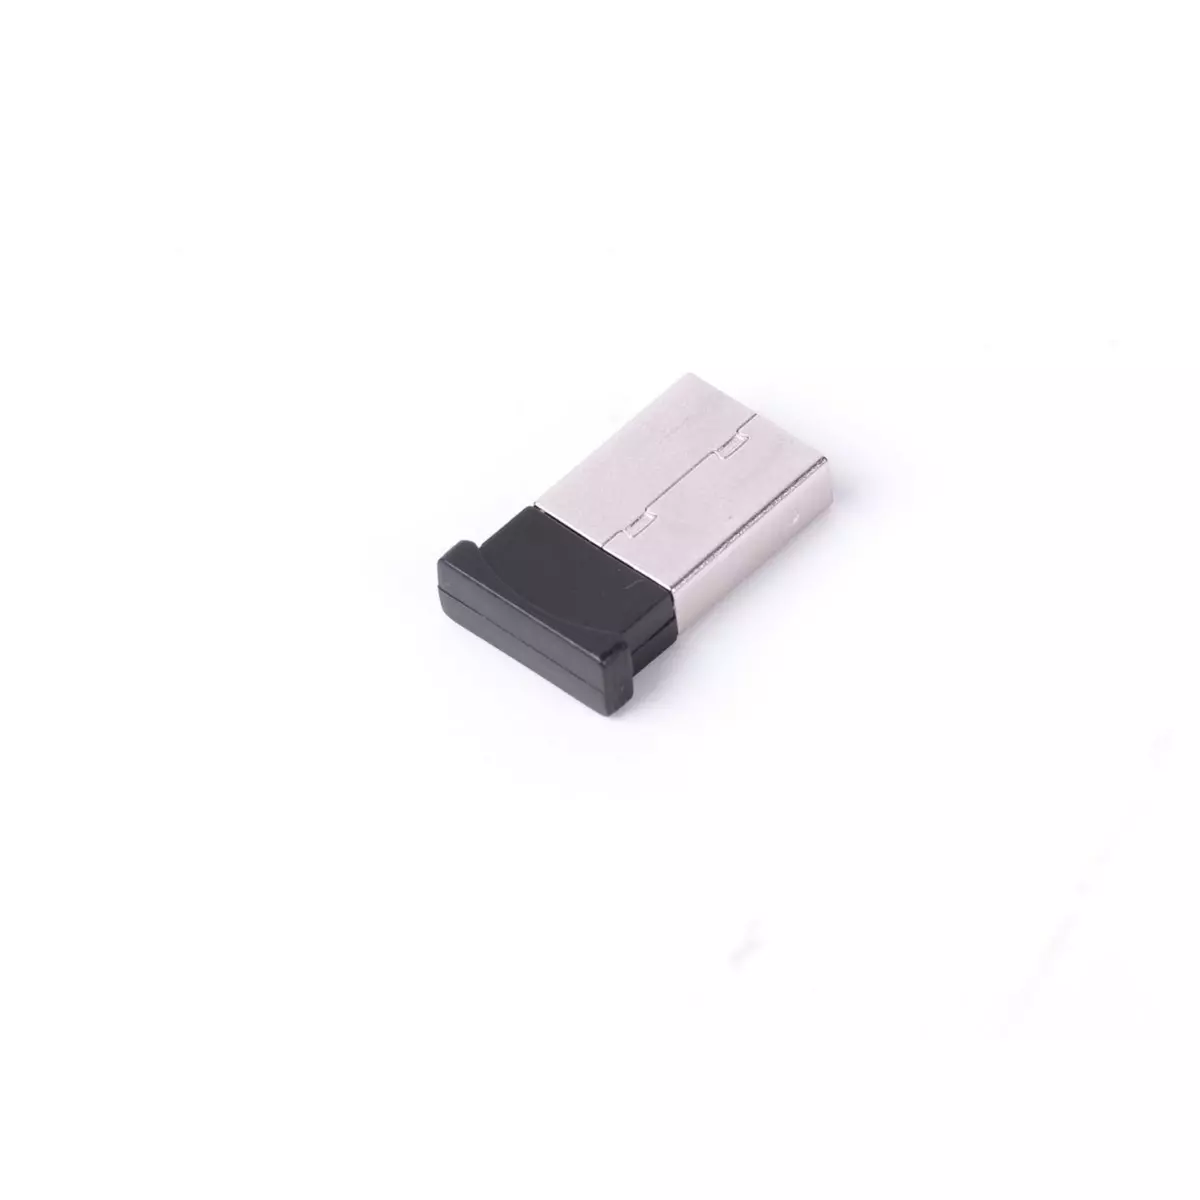 QILIVE Network USB Clé Bluetooth - Noire